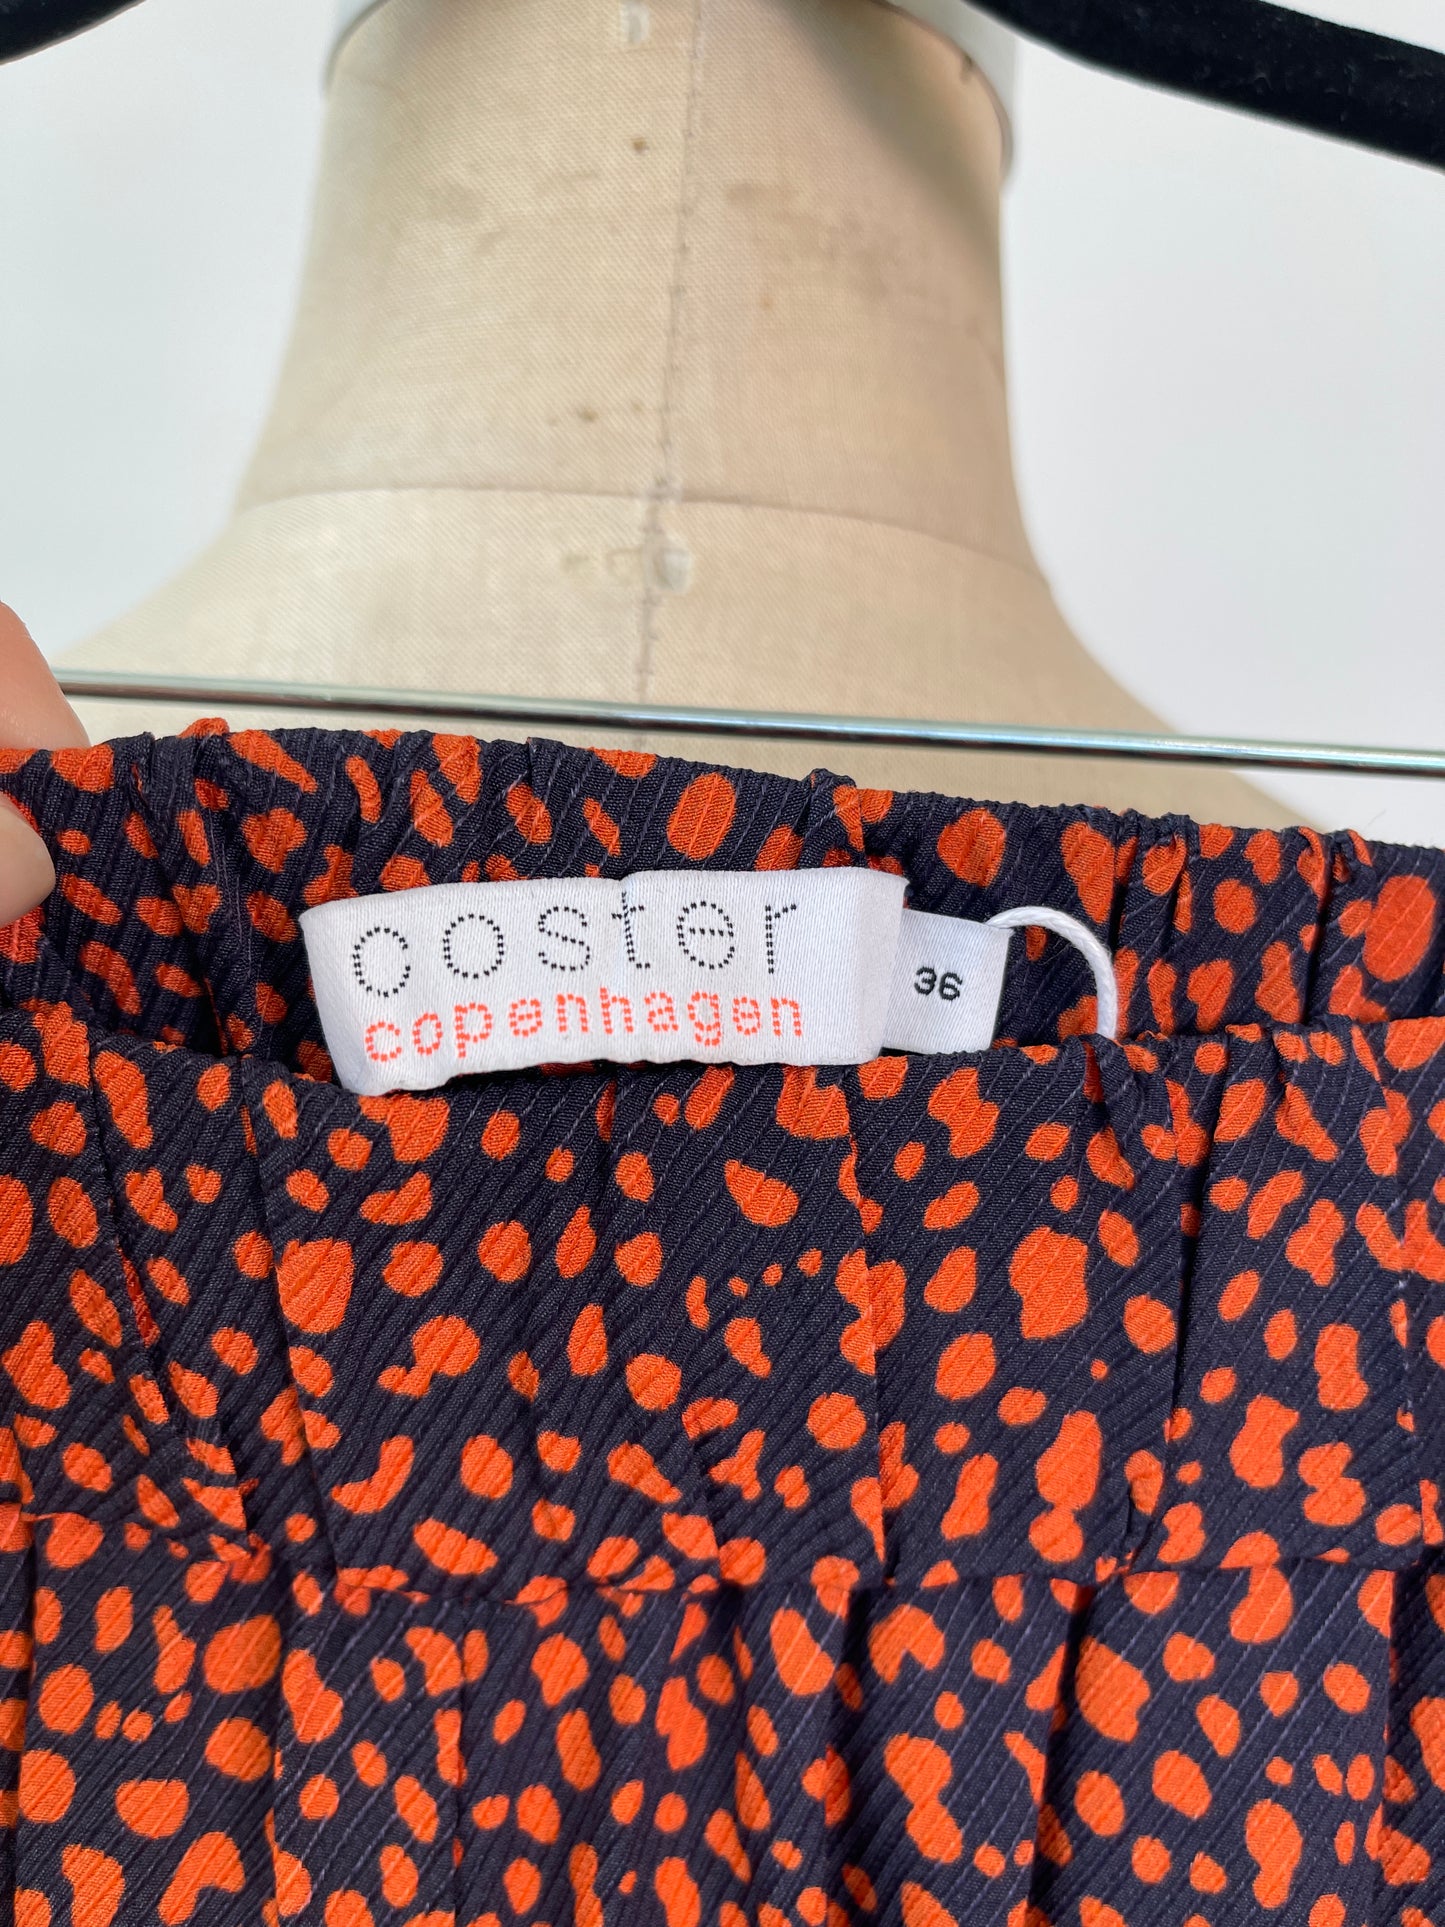 Pantalon et chemisier coordonnés fluides à motif marine et orange brûlé (XS/S)